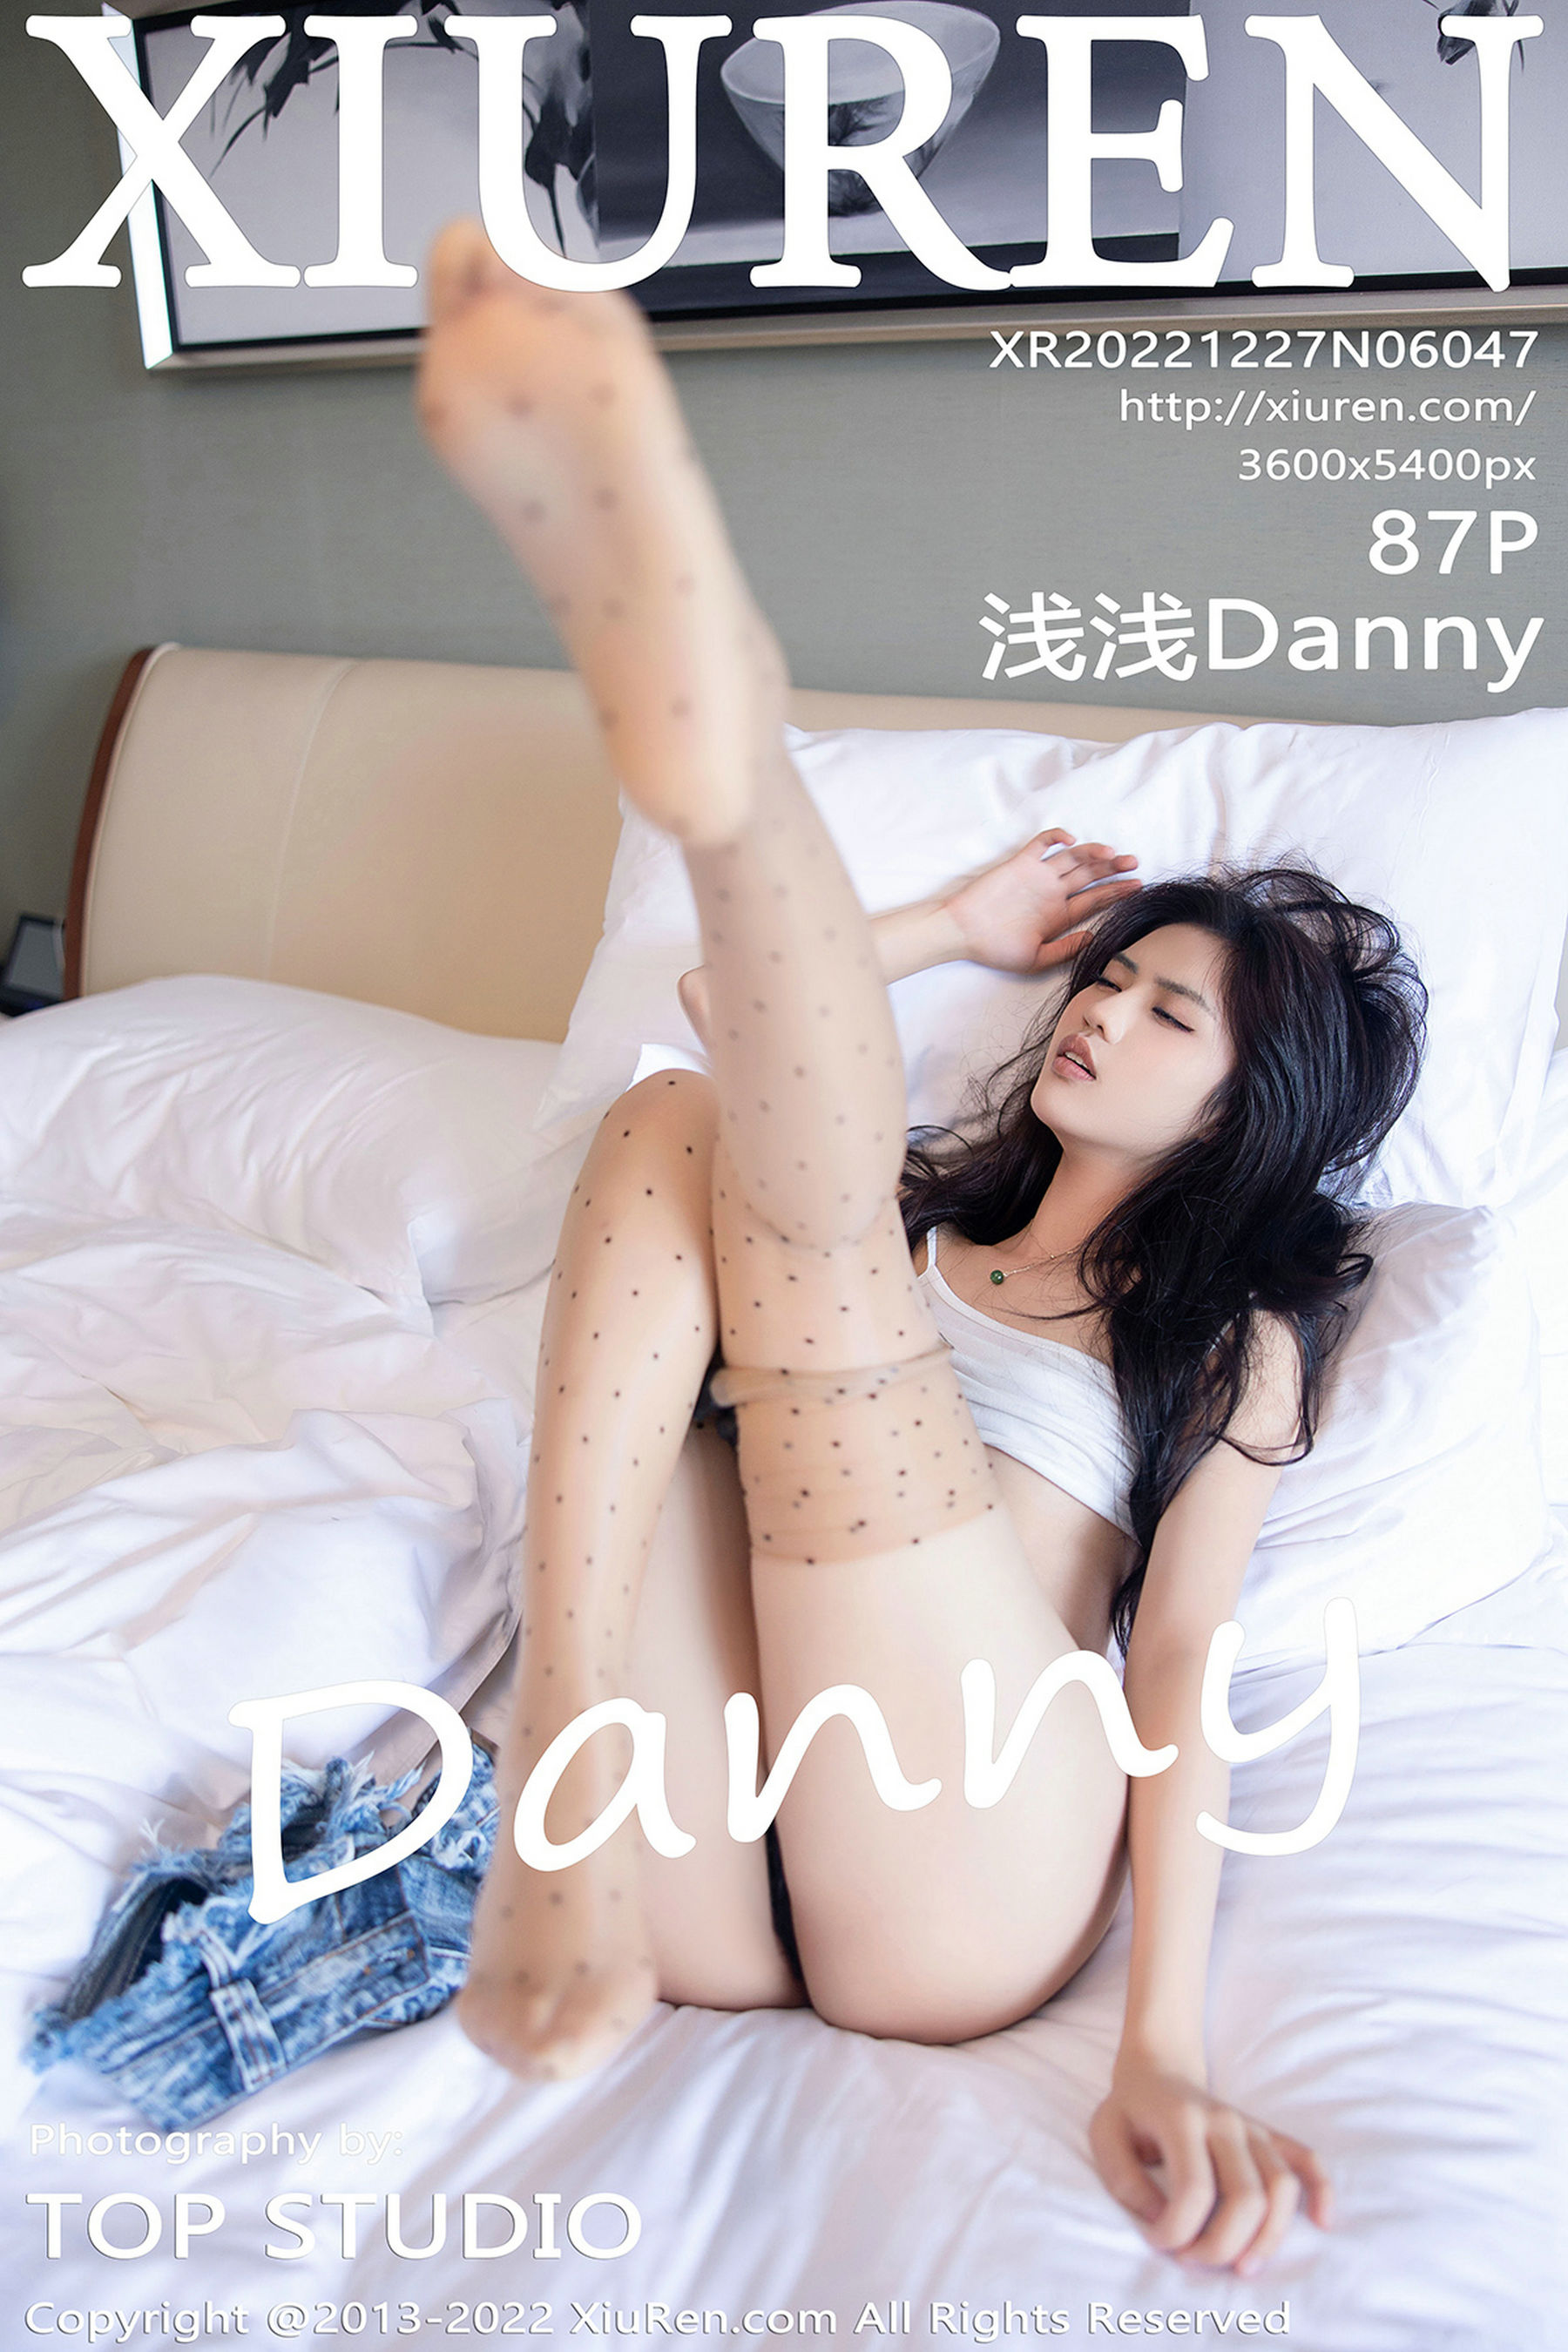 [秀人XiuRen] No.6047 浅浅Danny